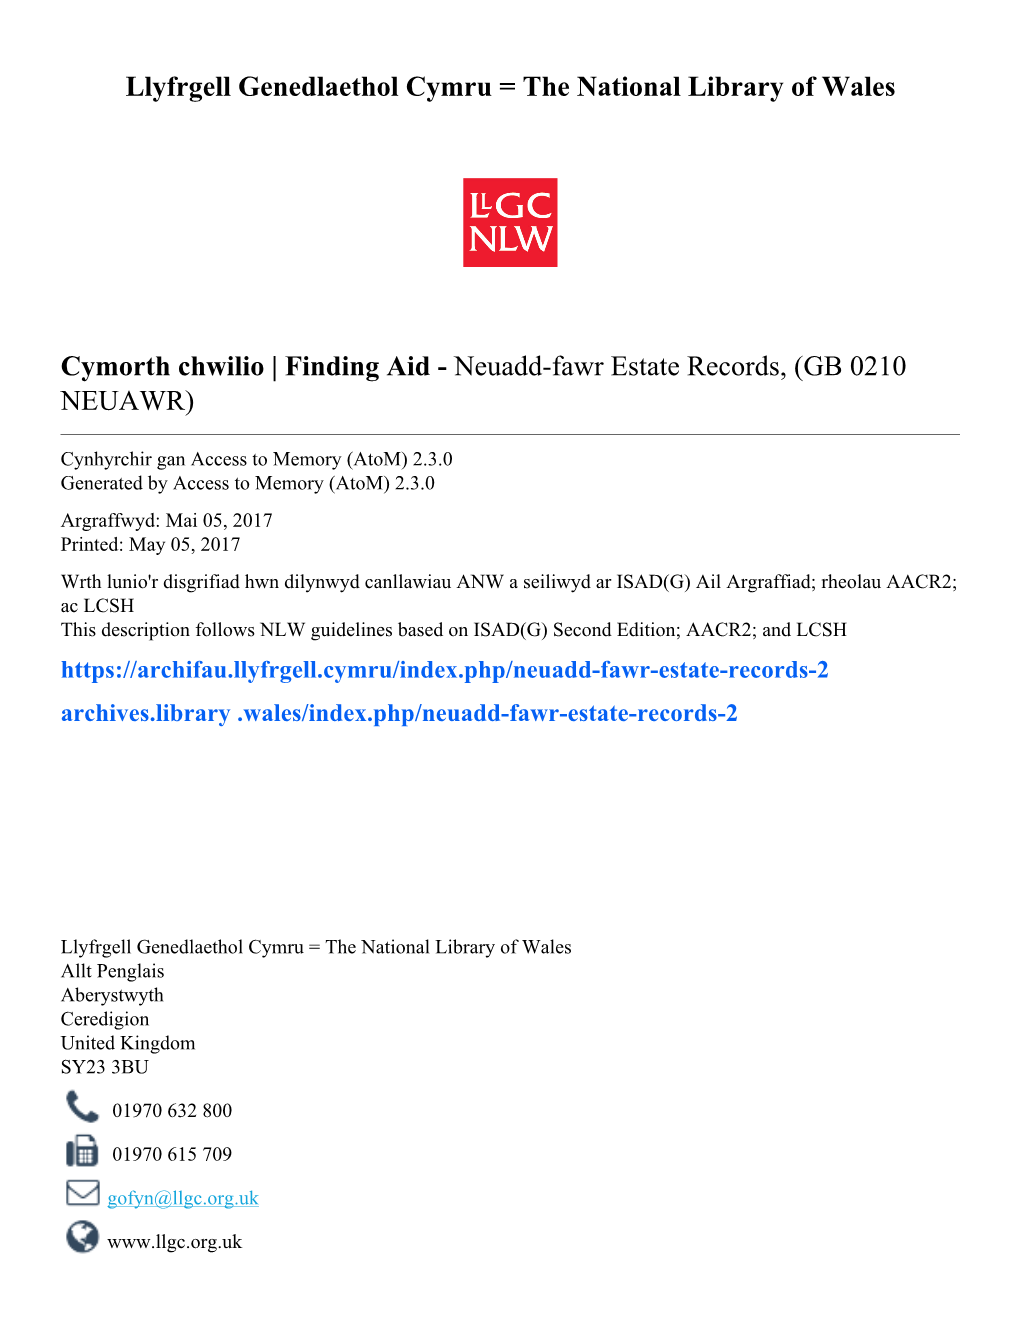 Finding Aid - Neuadd-Fawr Estate Records, (GB 0210 NEUAWR)